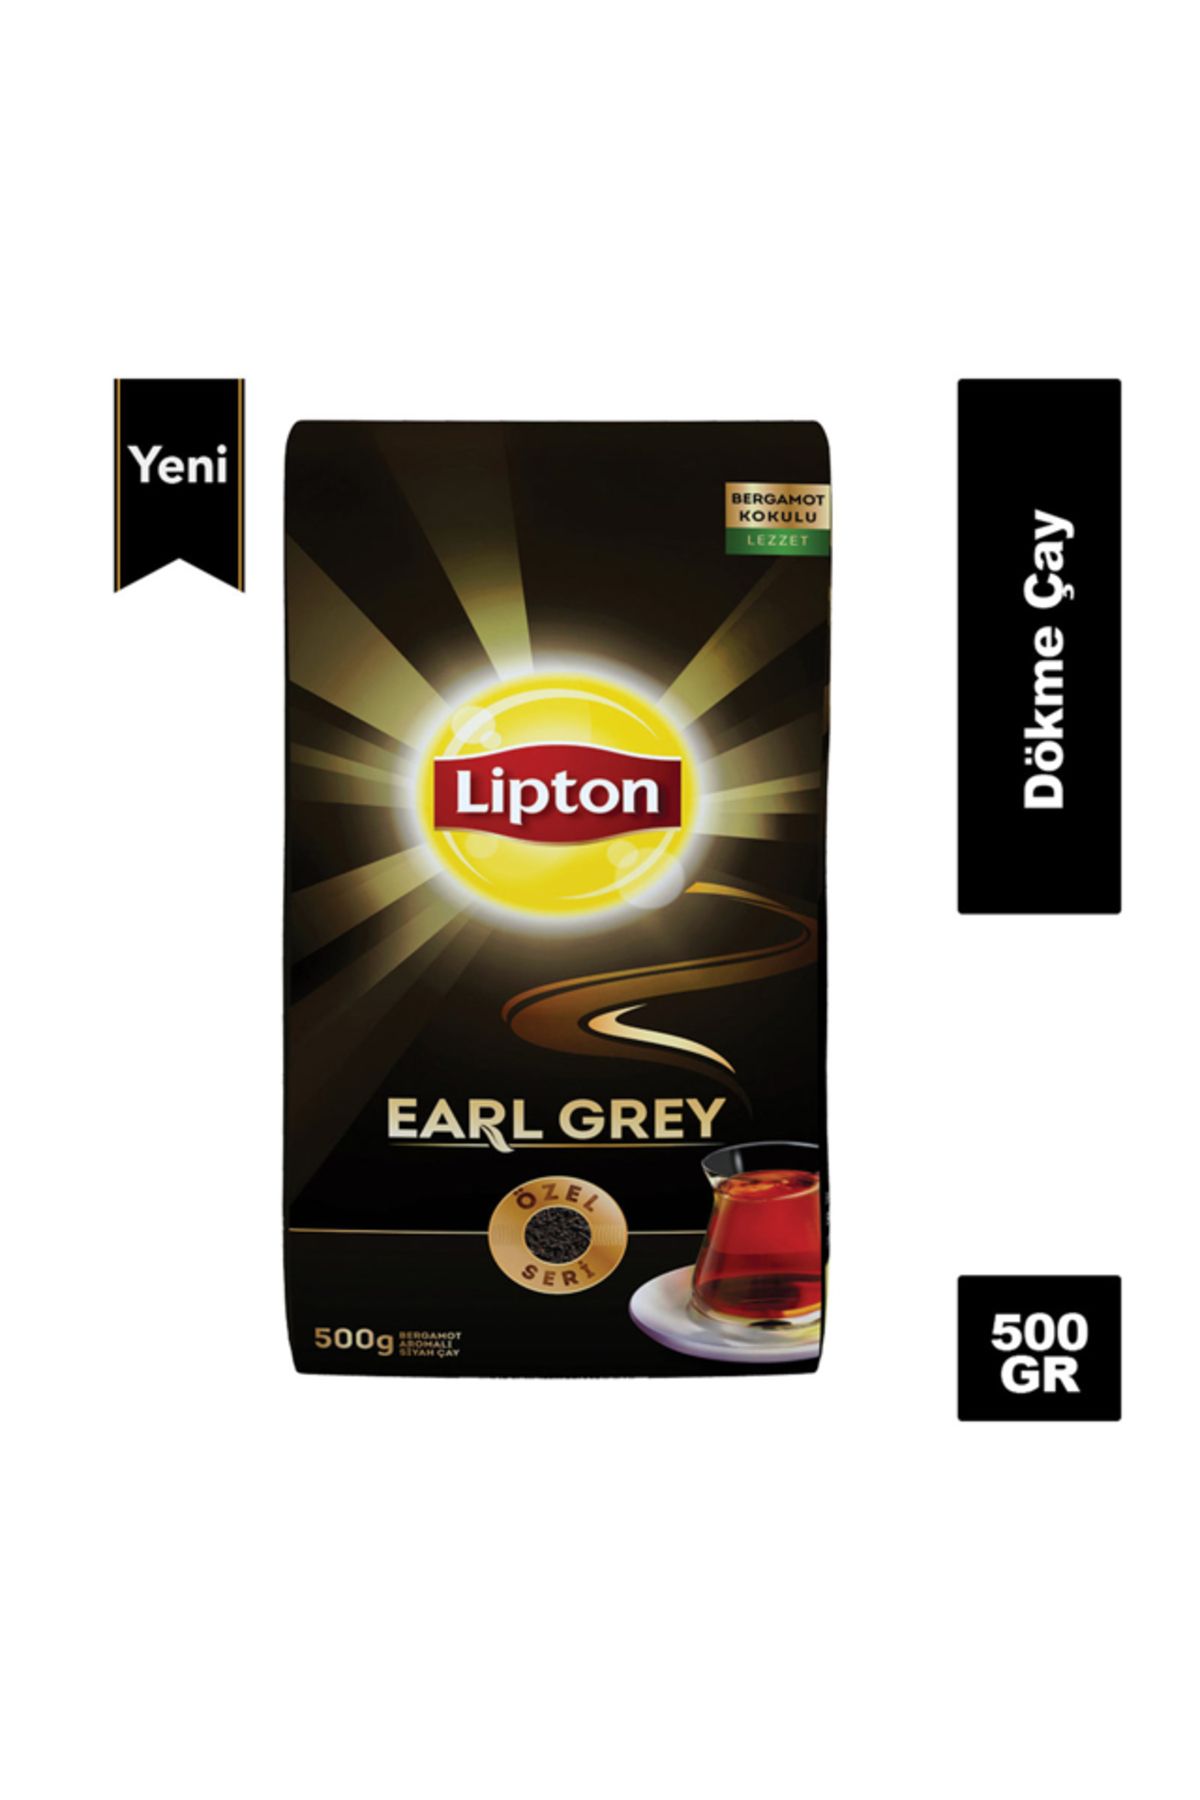 Lipton EARL GREY (BERGAMOT) 500 GR.